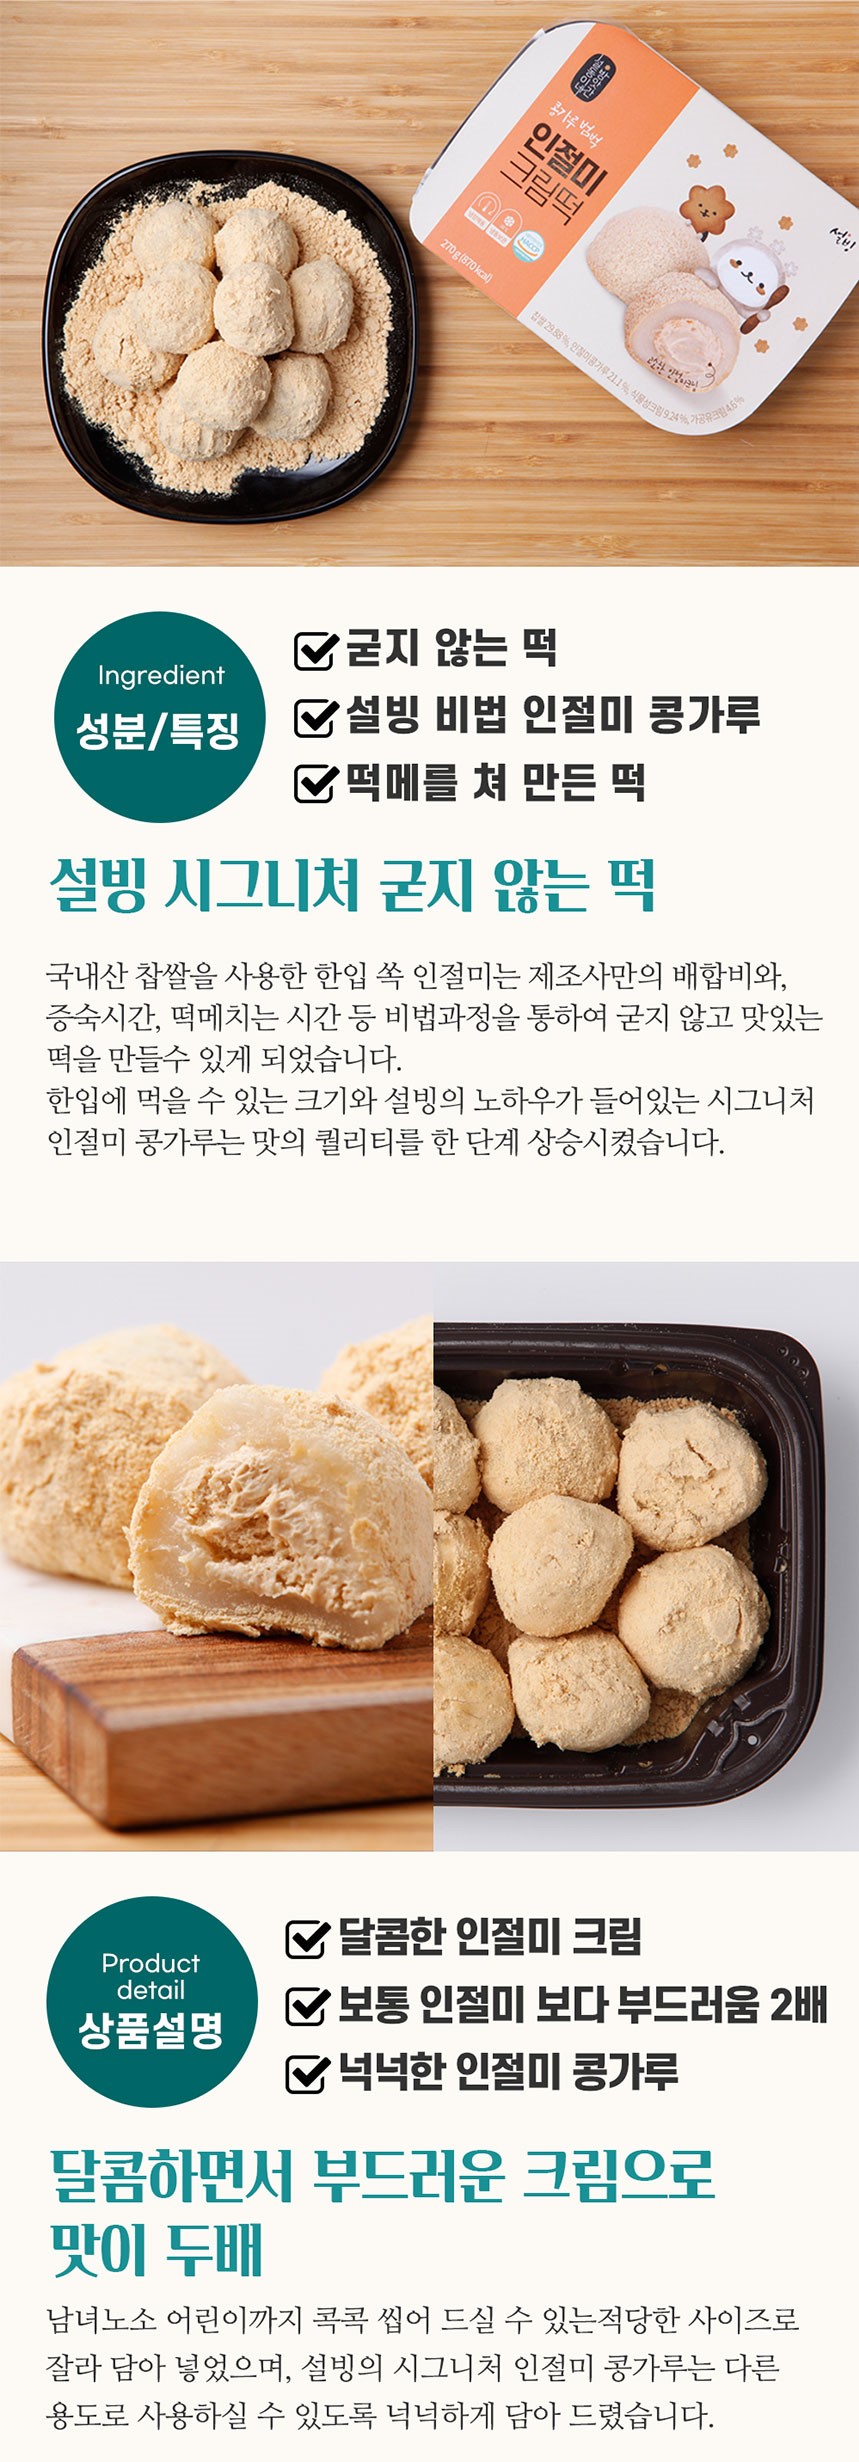 韓國食品-[설빙] 빙수 인절미크림떡 270g